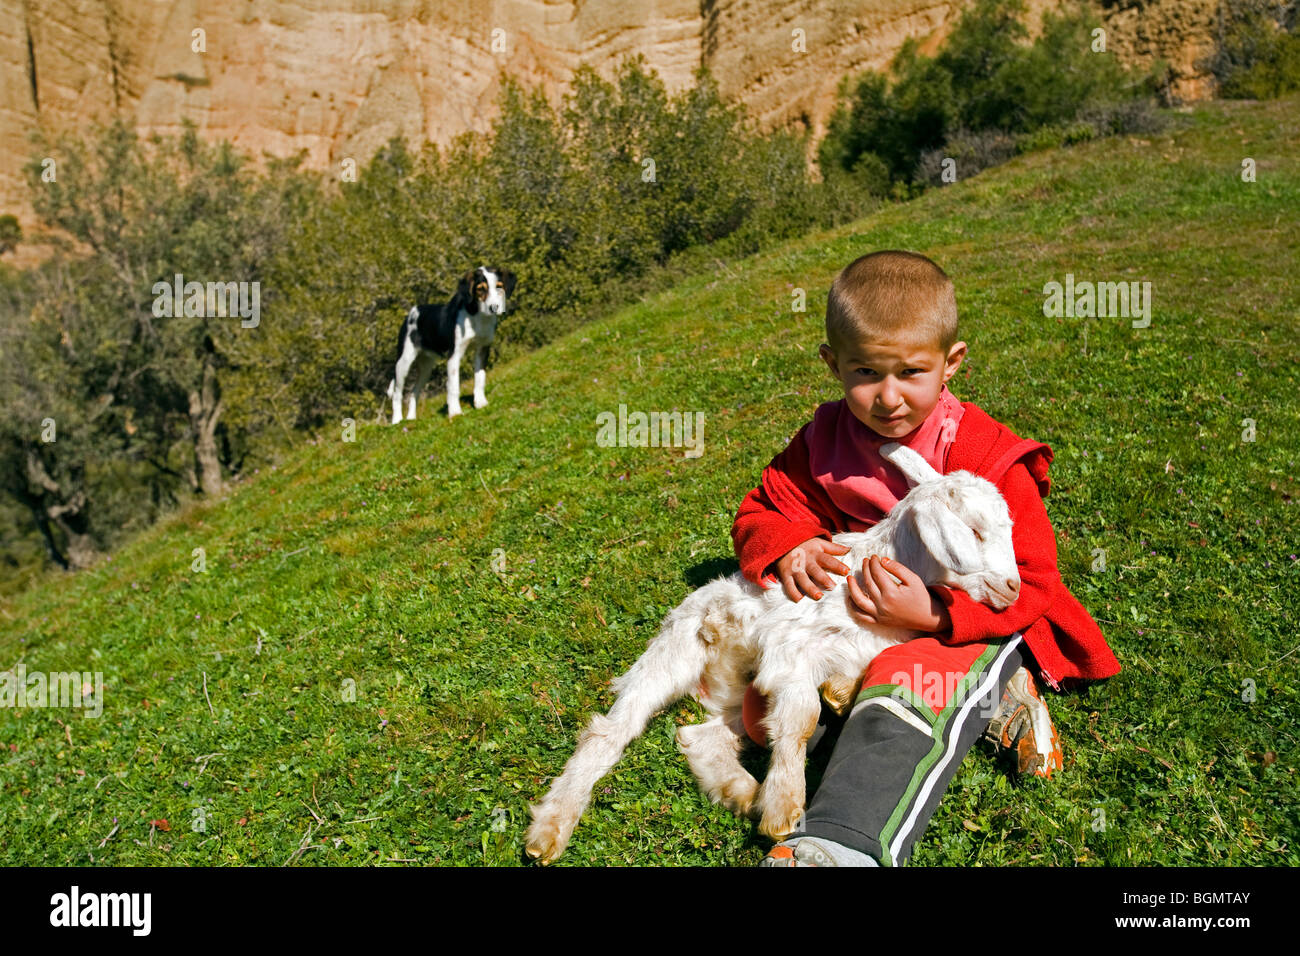 Un garçon avec un petit chèvre, Sardes, Izmir Turquie Banque D'Images